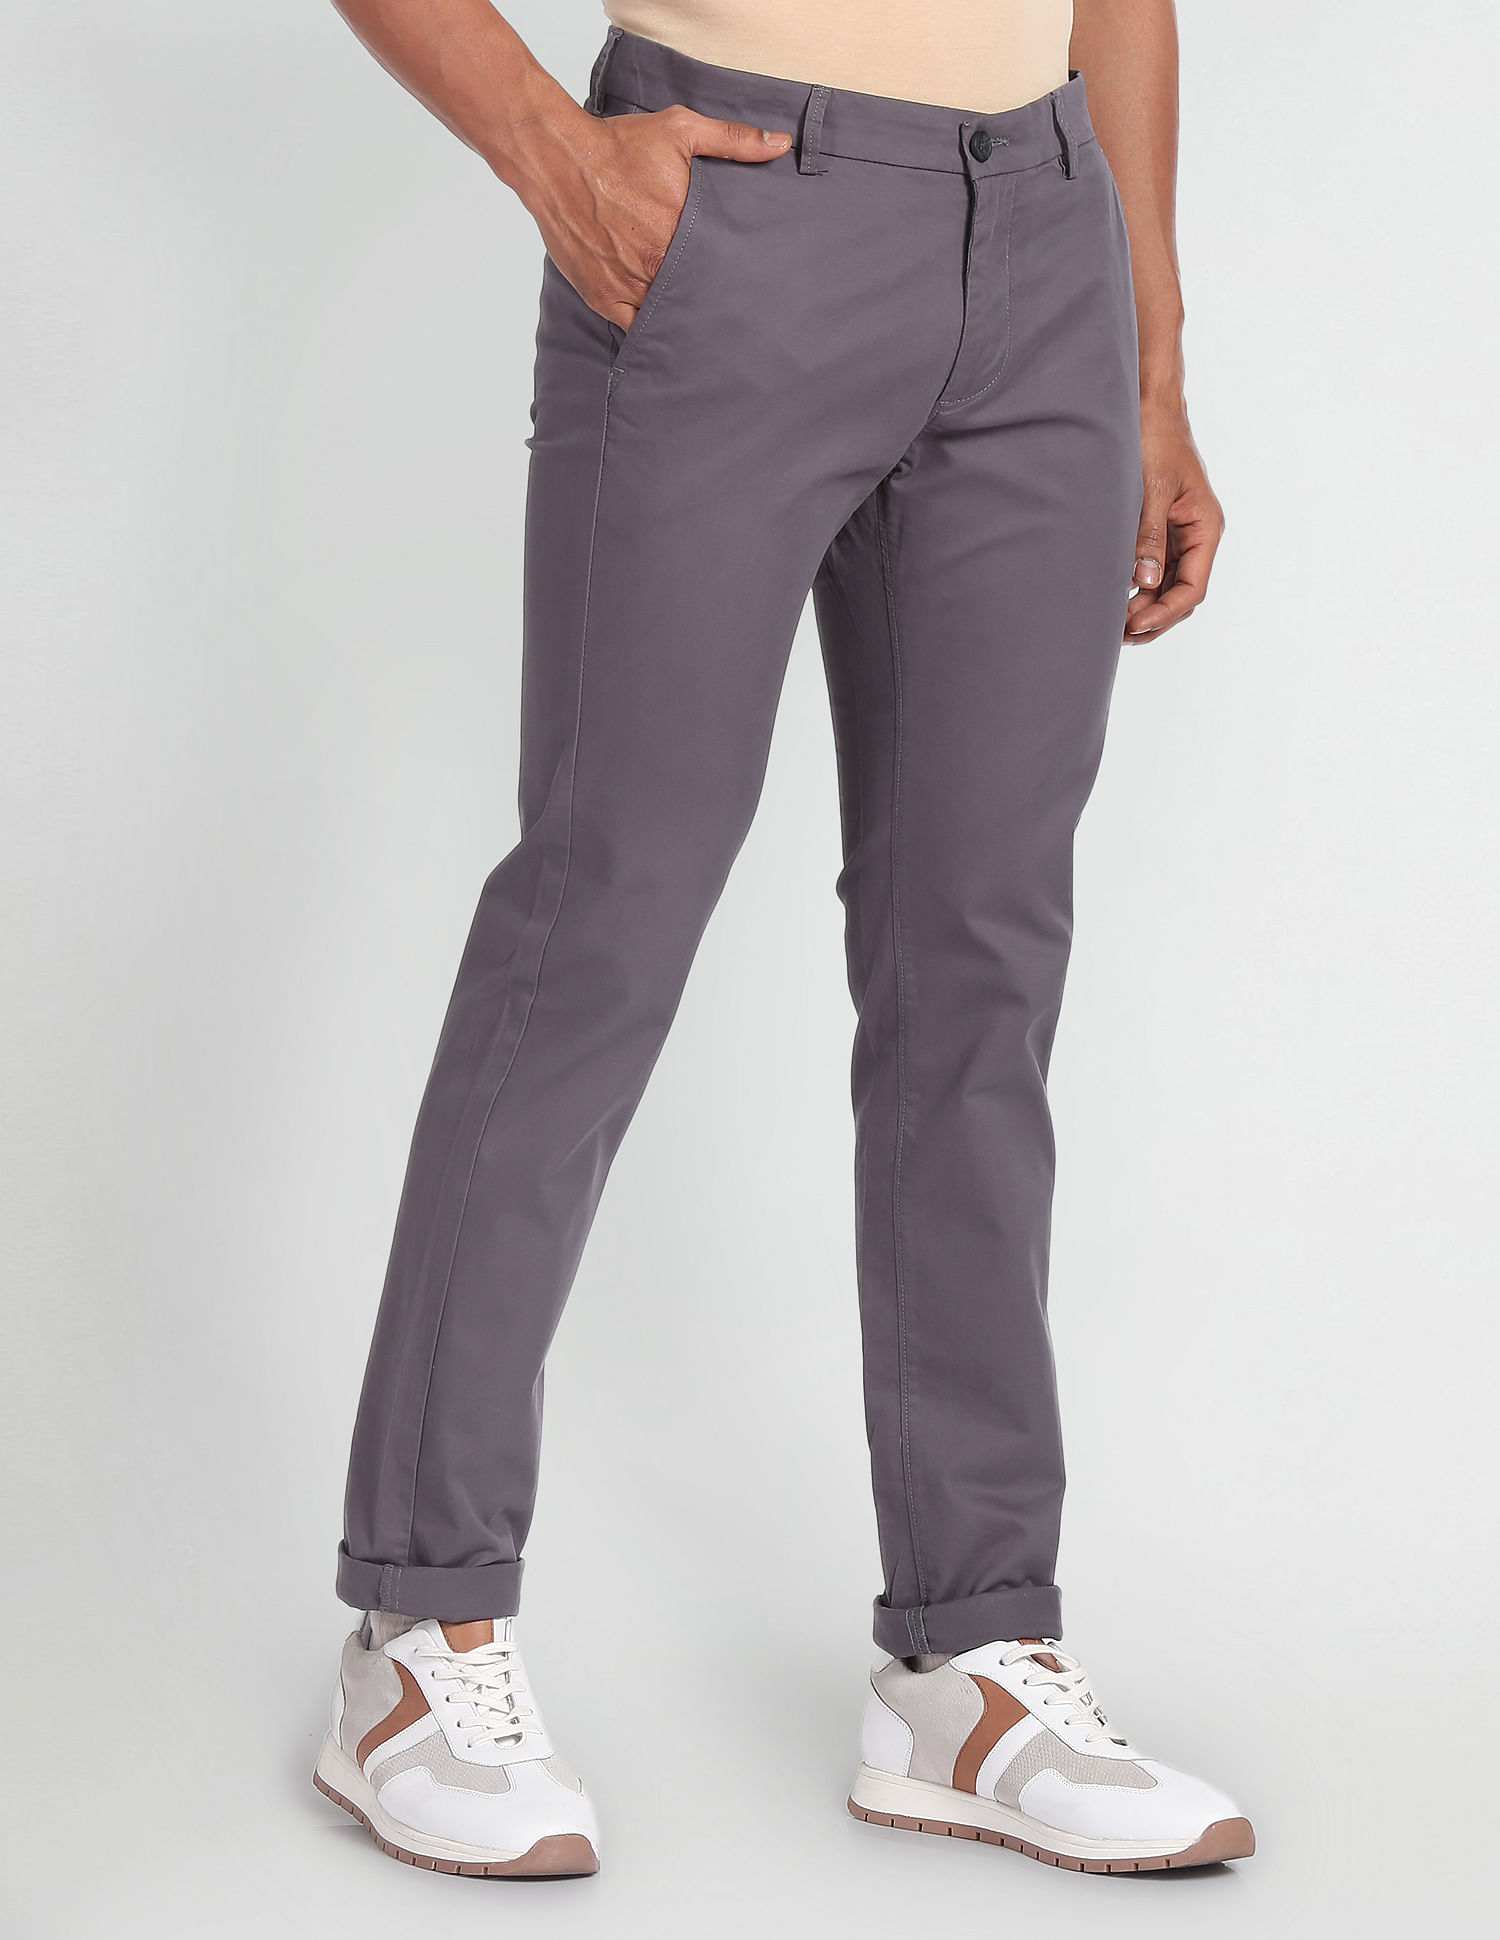 Flat Front Pants for Men for sale | eBay-atpcosmetics.com.vn